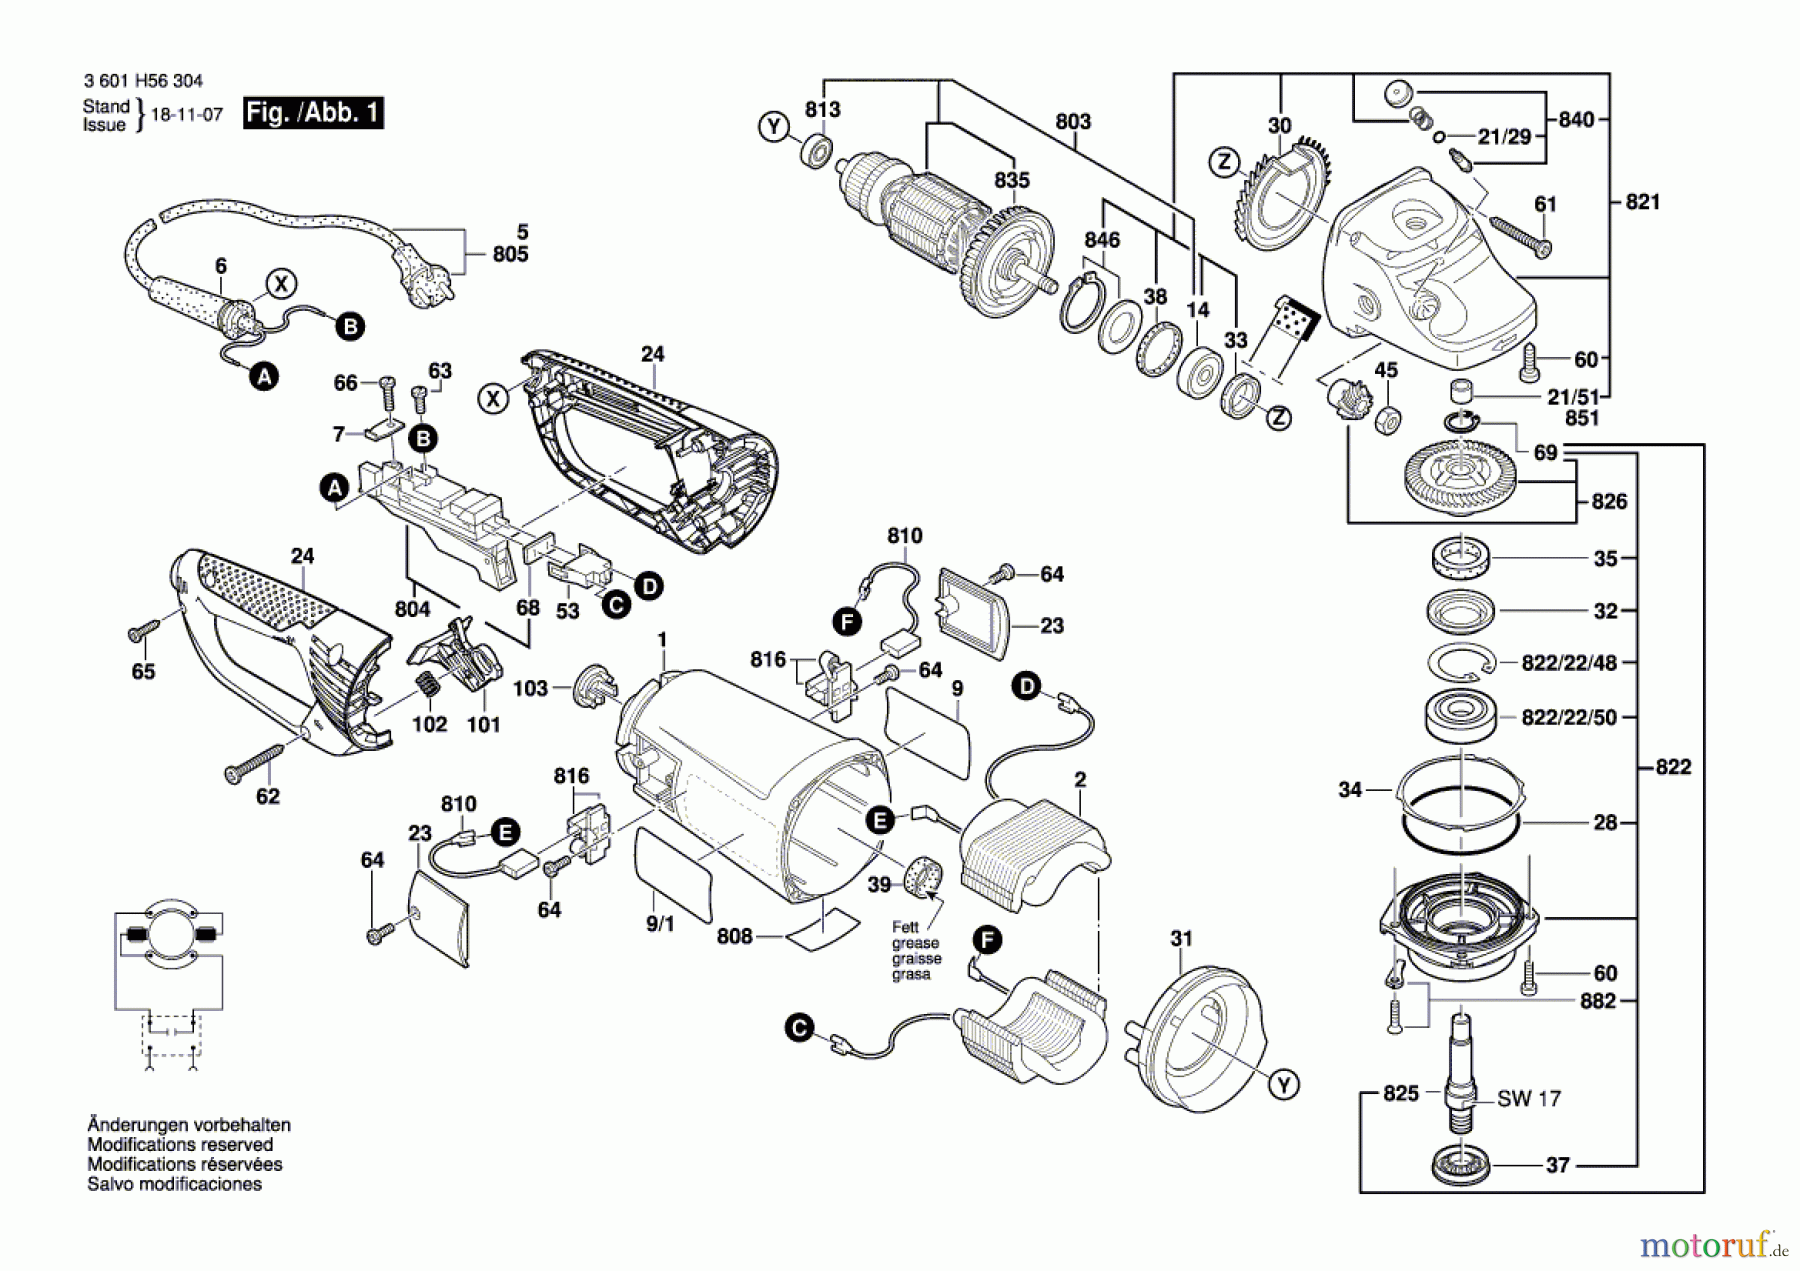  Bosch Werkzeug Winkelschleifer GWS 26-230 B Seite 1